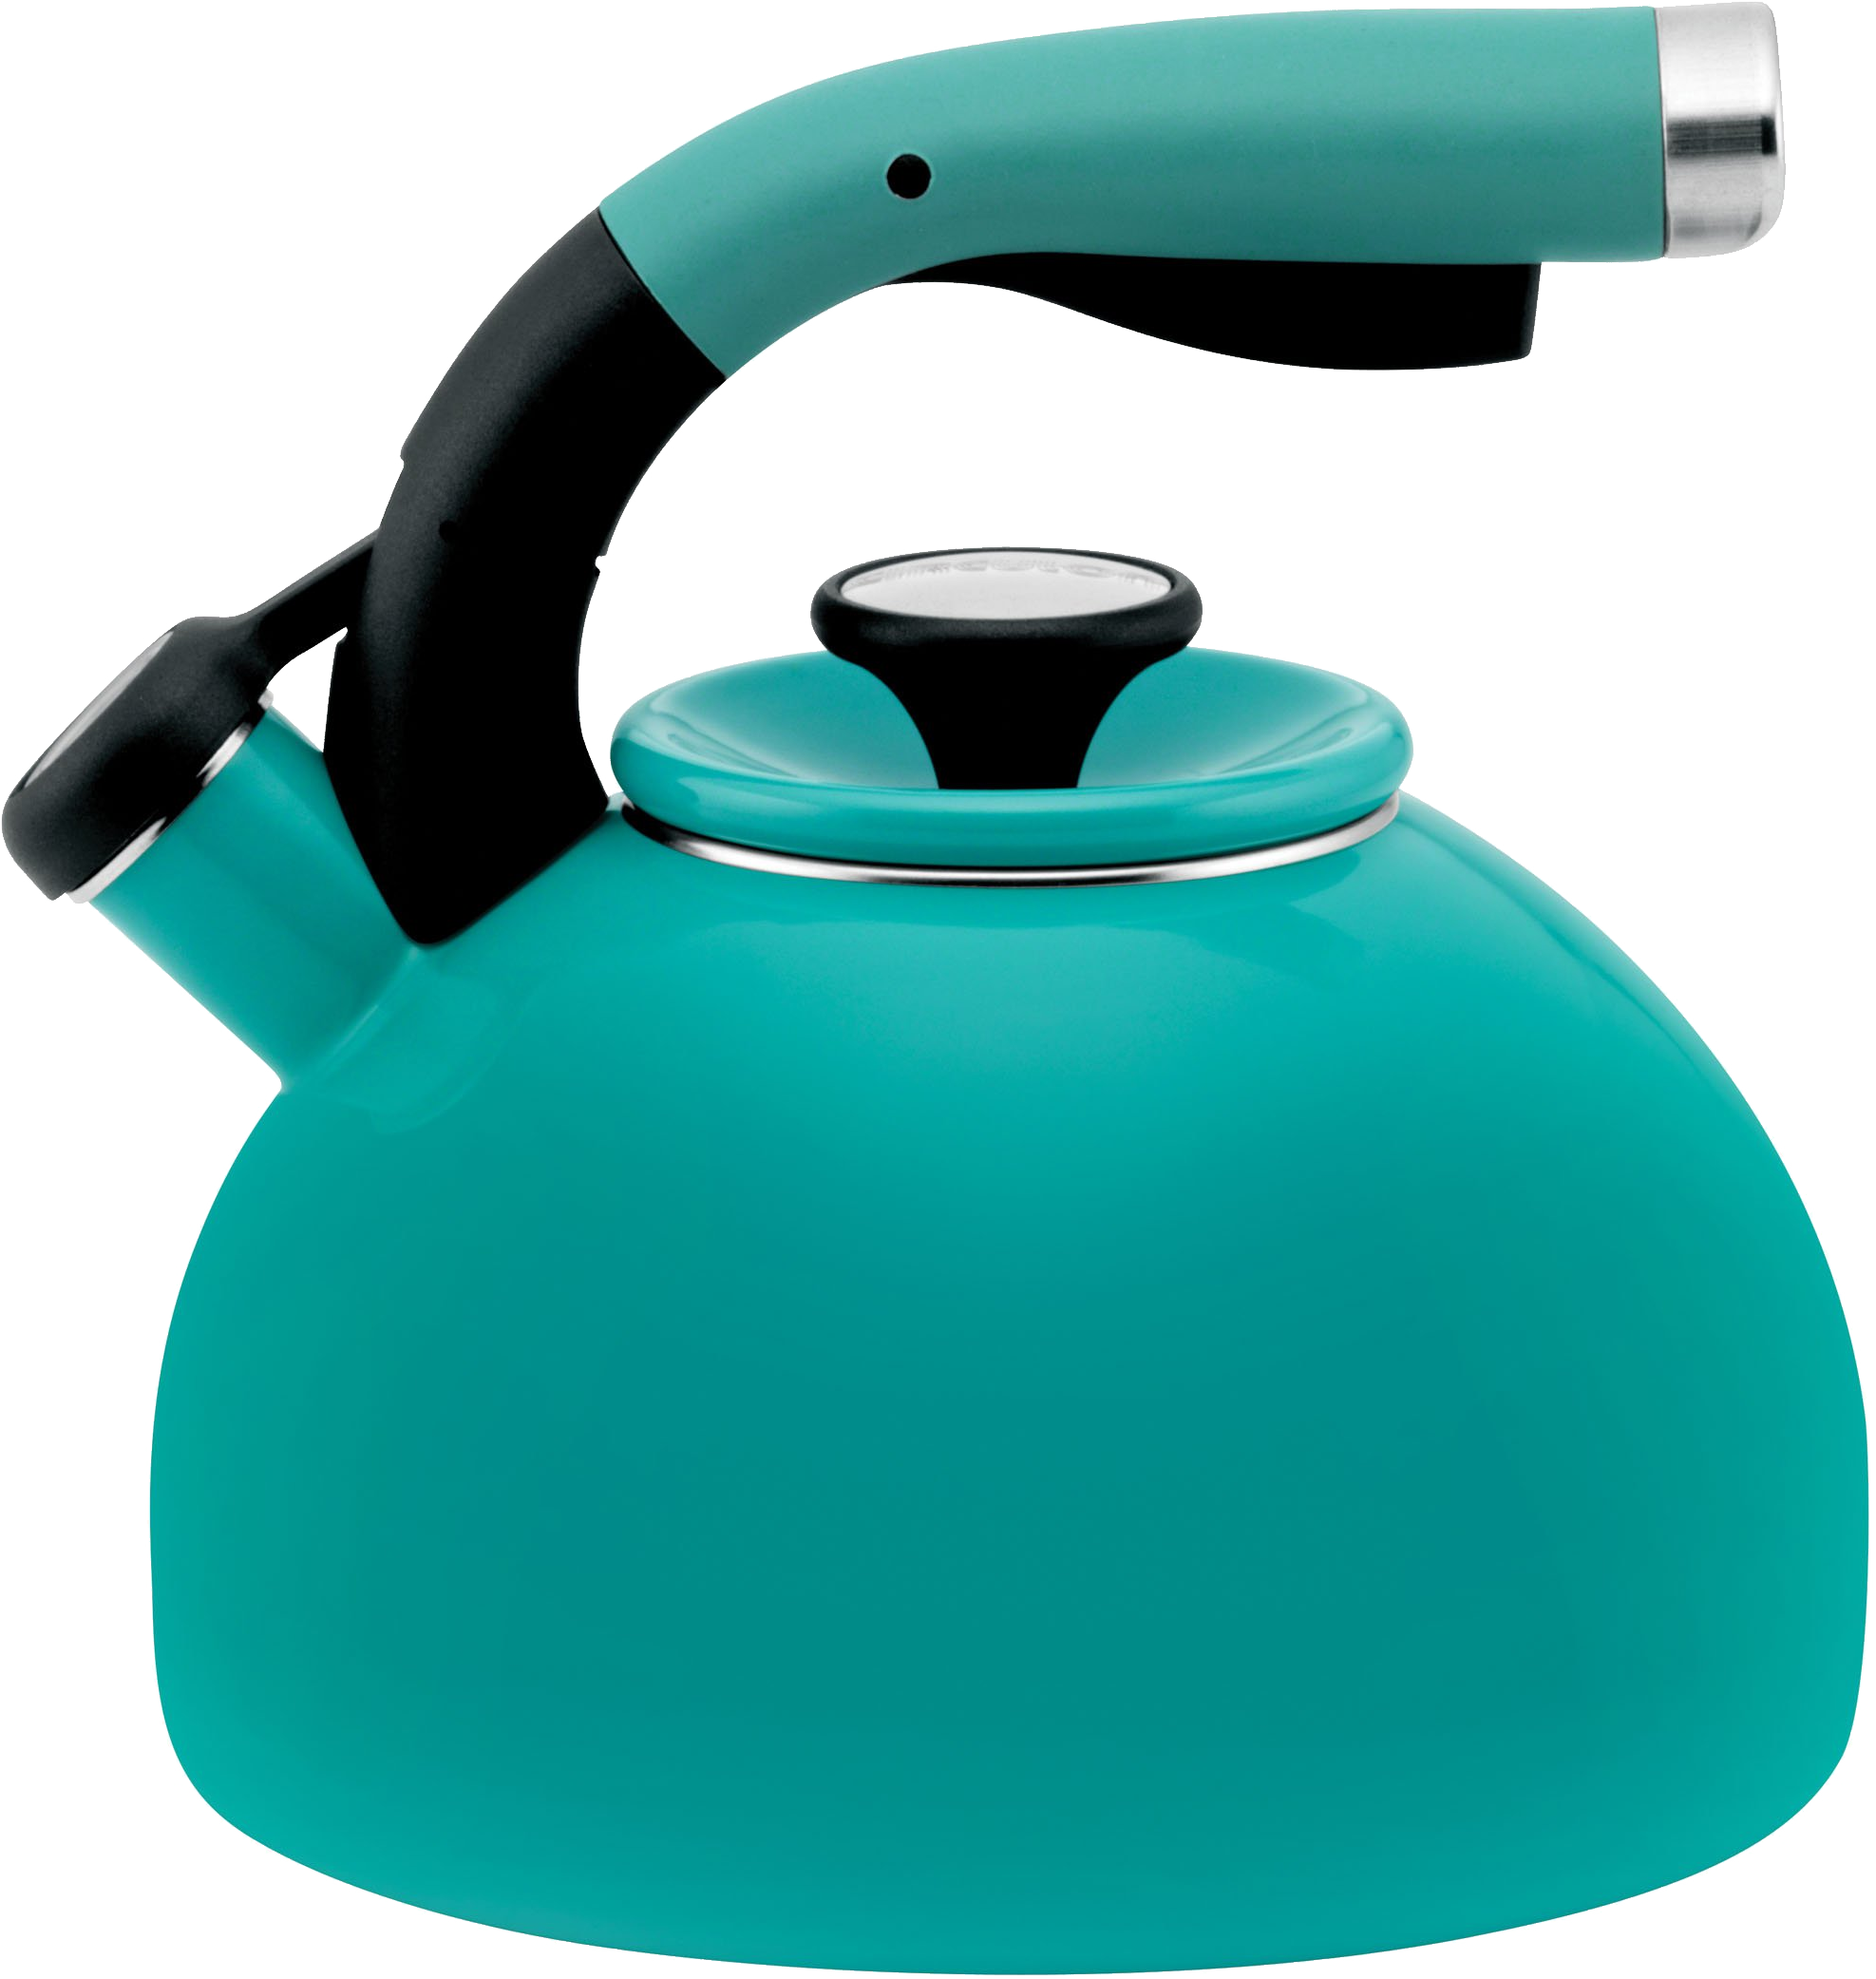 Blue kettle PNG image